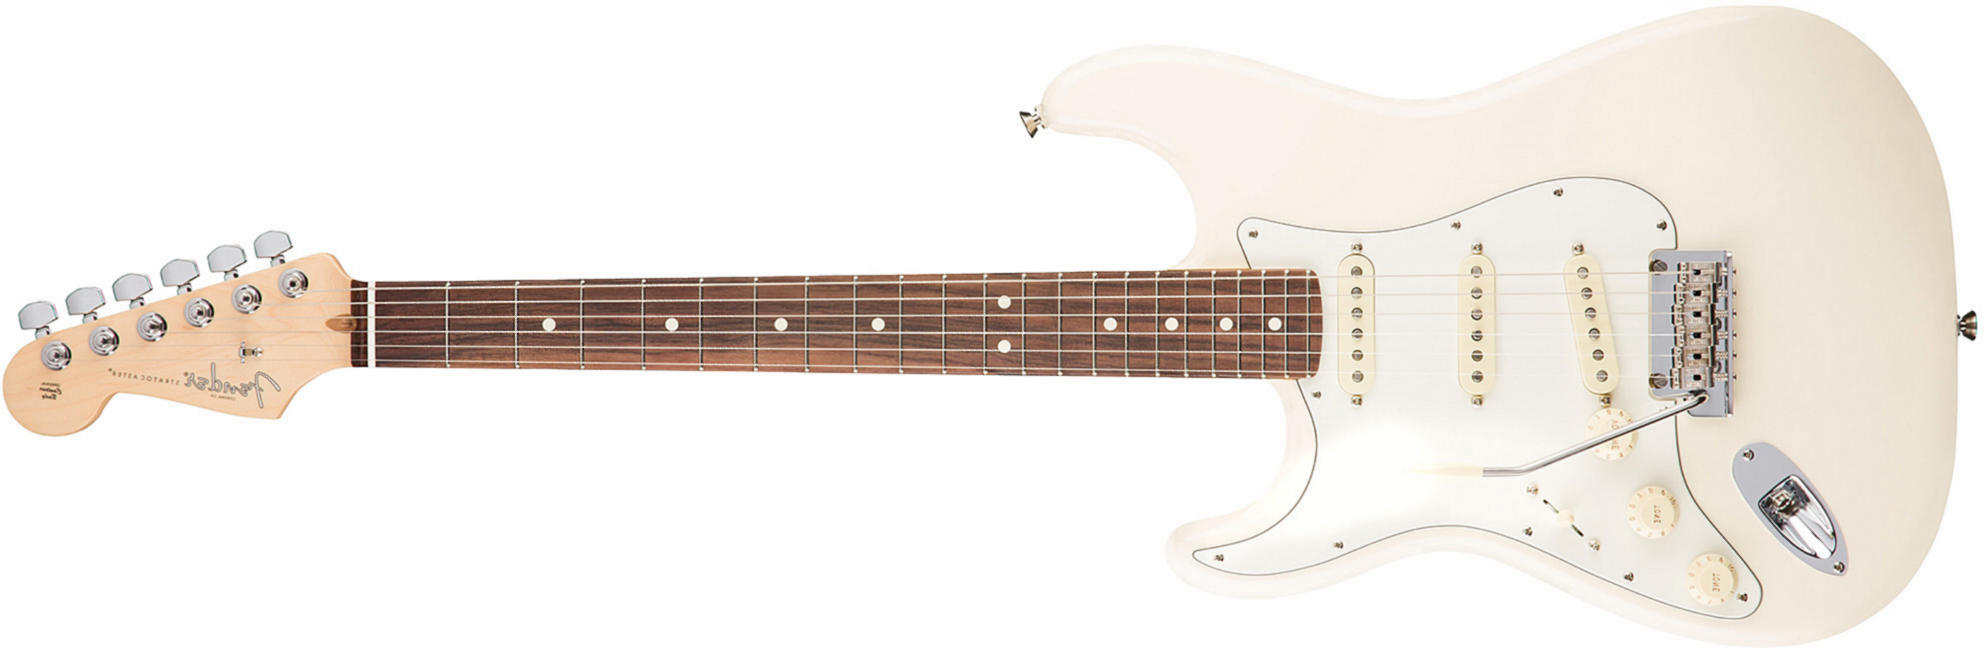 Fender Strat American Professional Lh Usa Gaucher 3s Rw - Olympic White - E-Gitarre für Linkshänder - Main picture